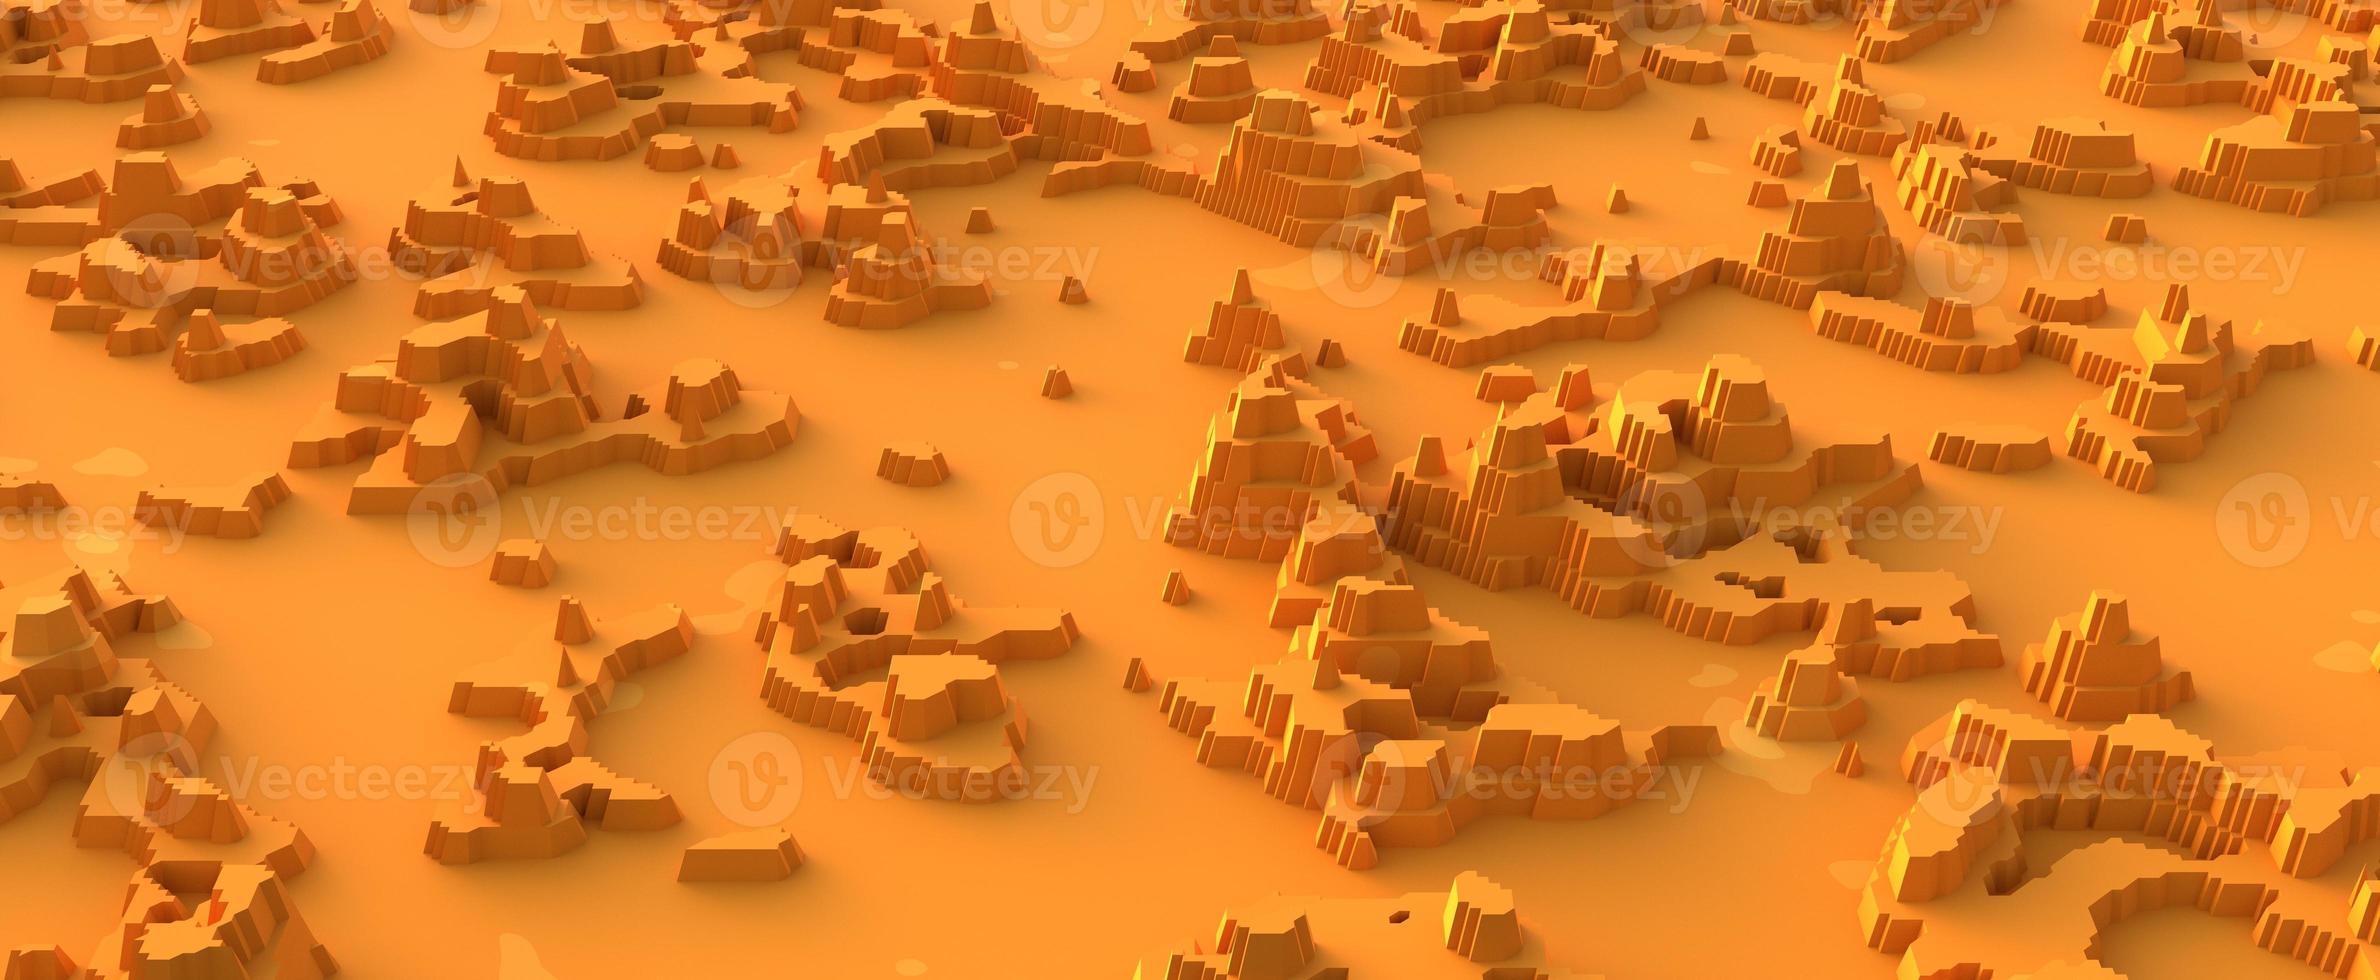 Wüstenlandschaft aus Papier ausgeschnitten. gelbe heiße sandfläche mit 3d-rendersteinmassiven und getrockneten oasen. natürliche Abstraktion von Schluchten und verstreuten Hügeln in der Wüste foto